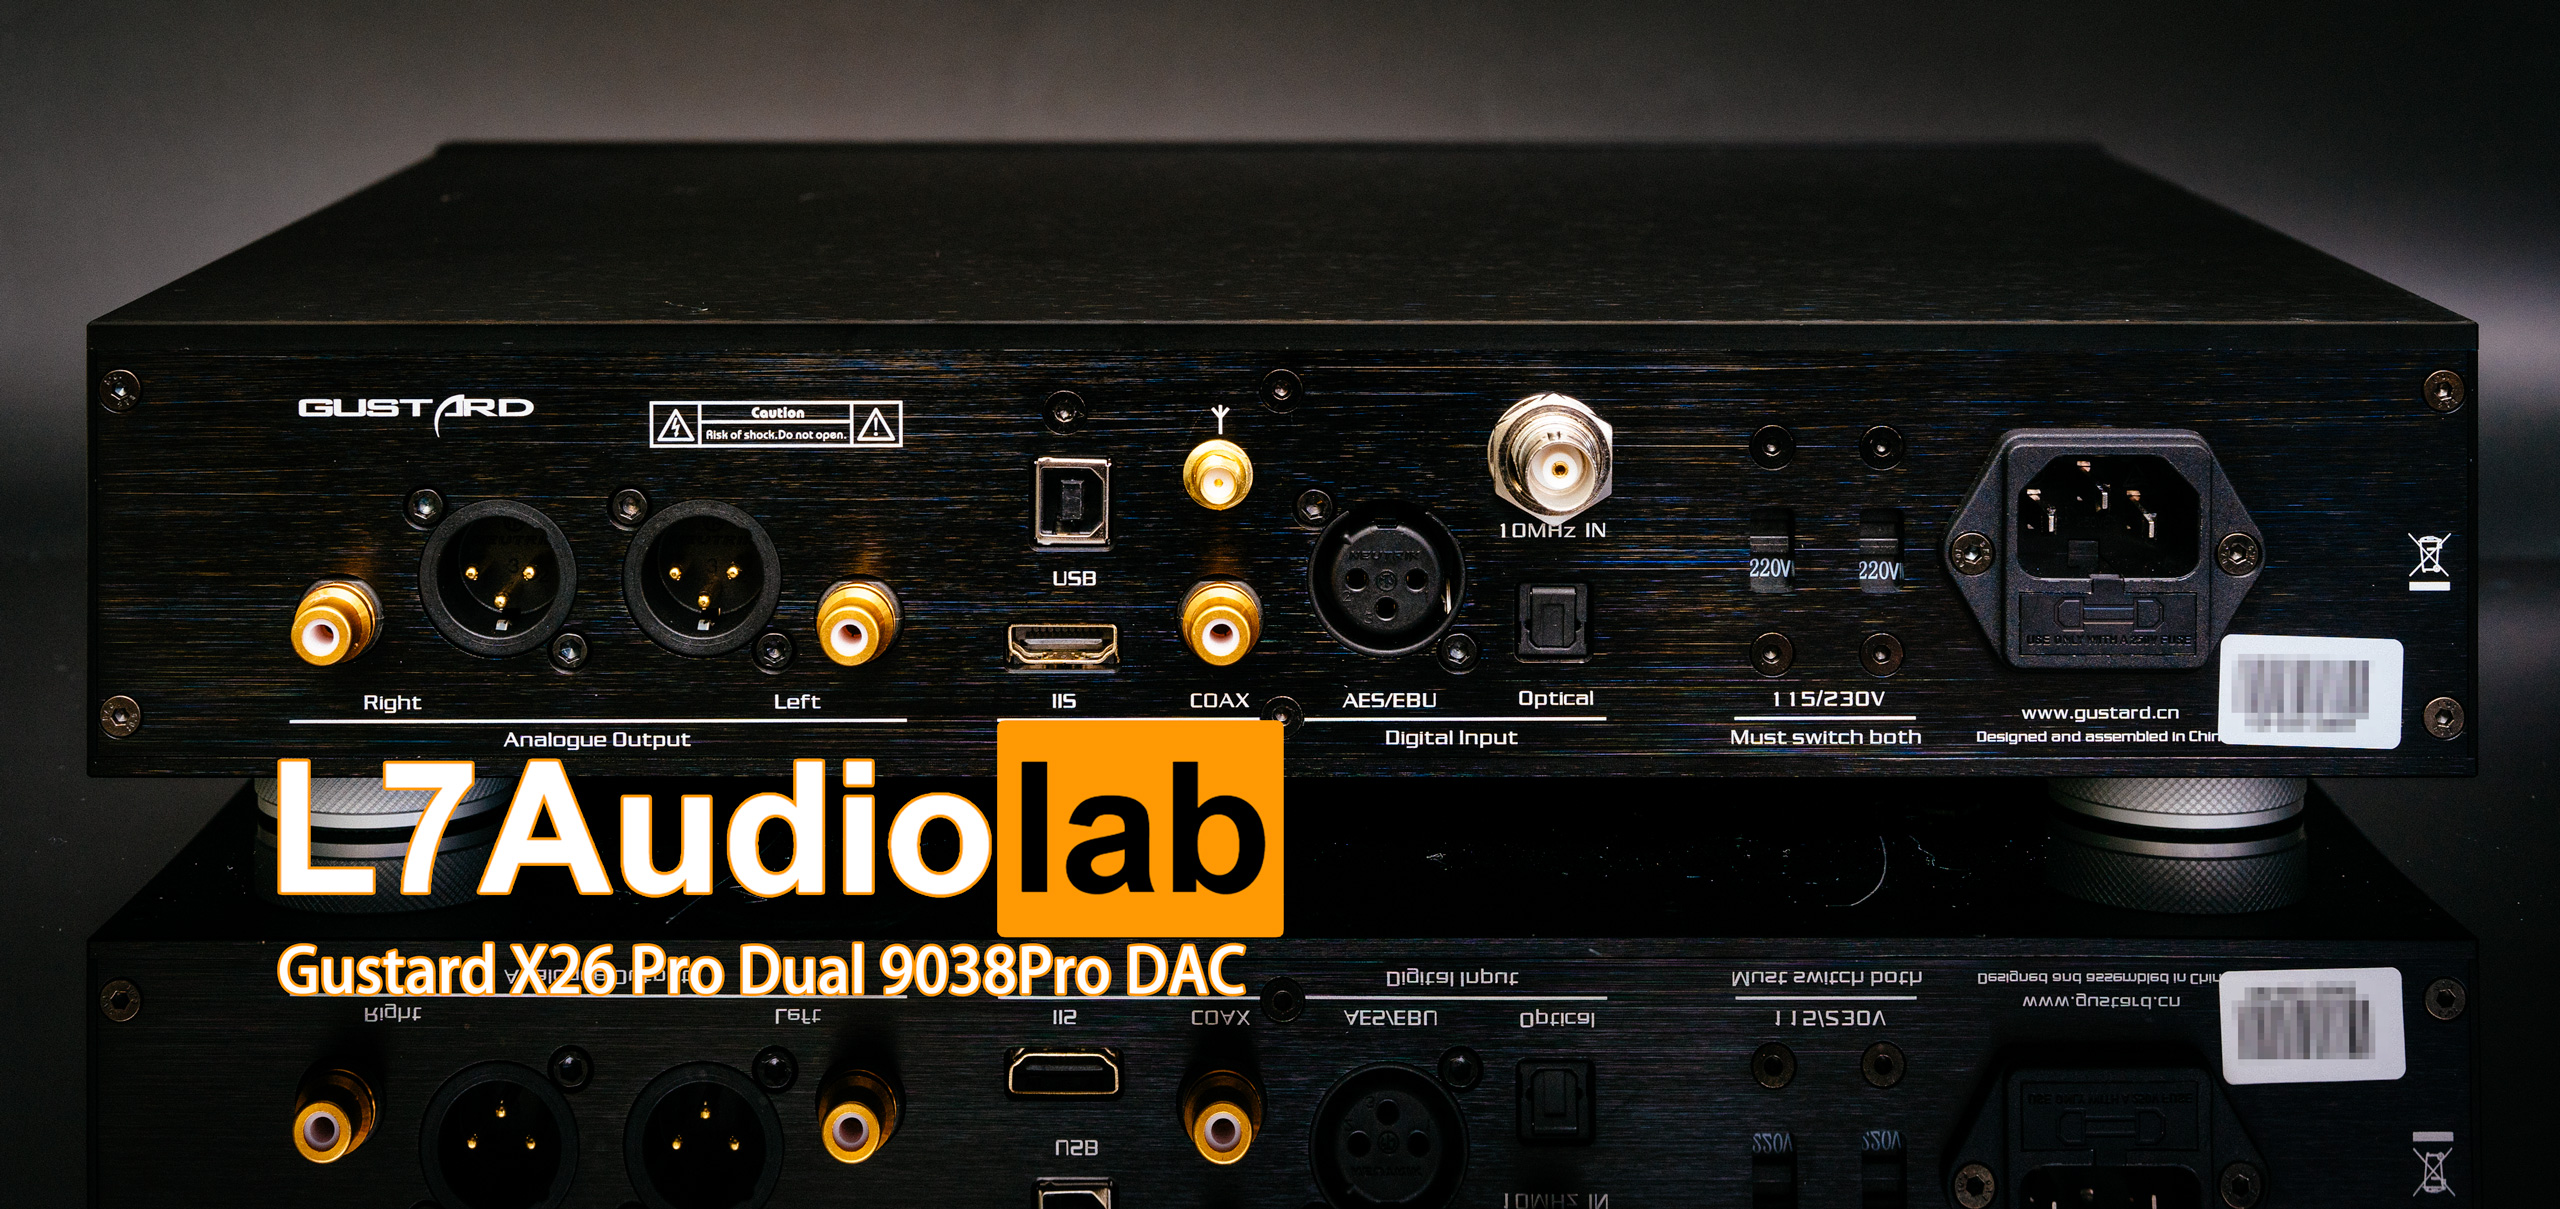 Measurements of Gustard X26 Pro Dual 9038 Pro DAC - L7Audiolab